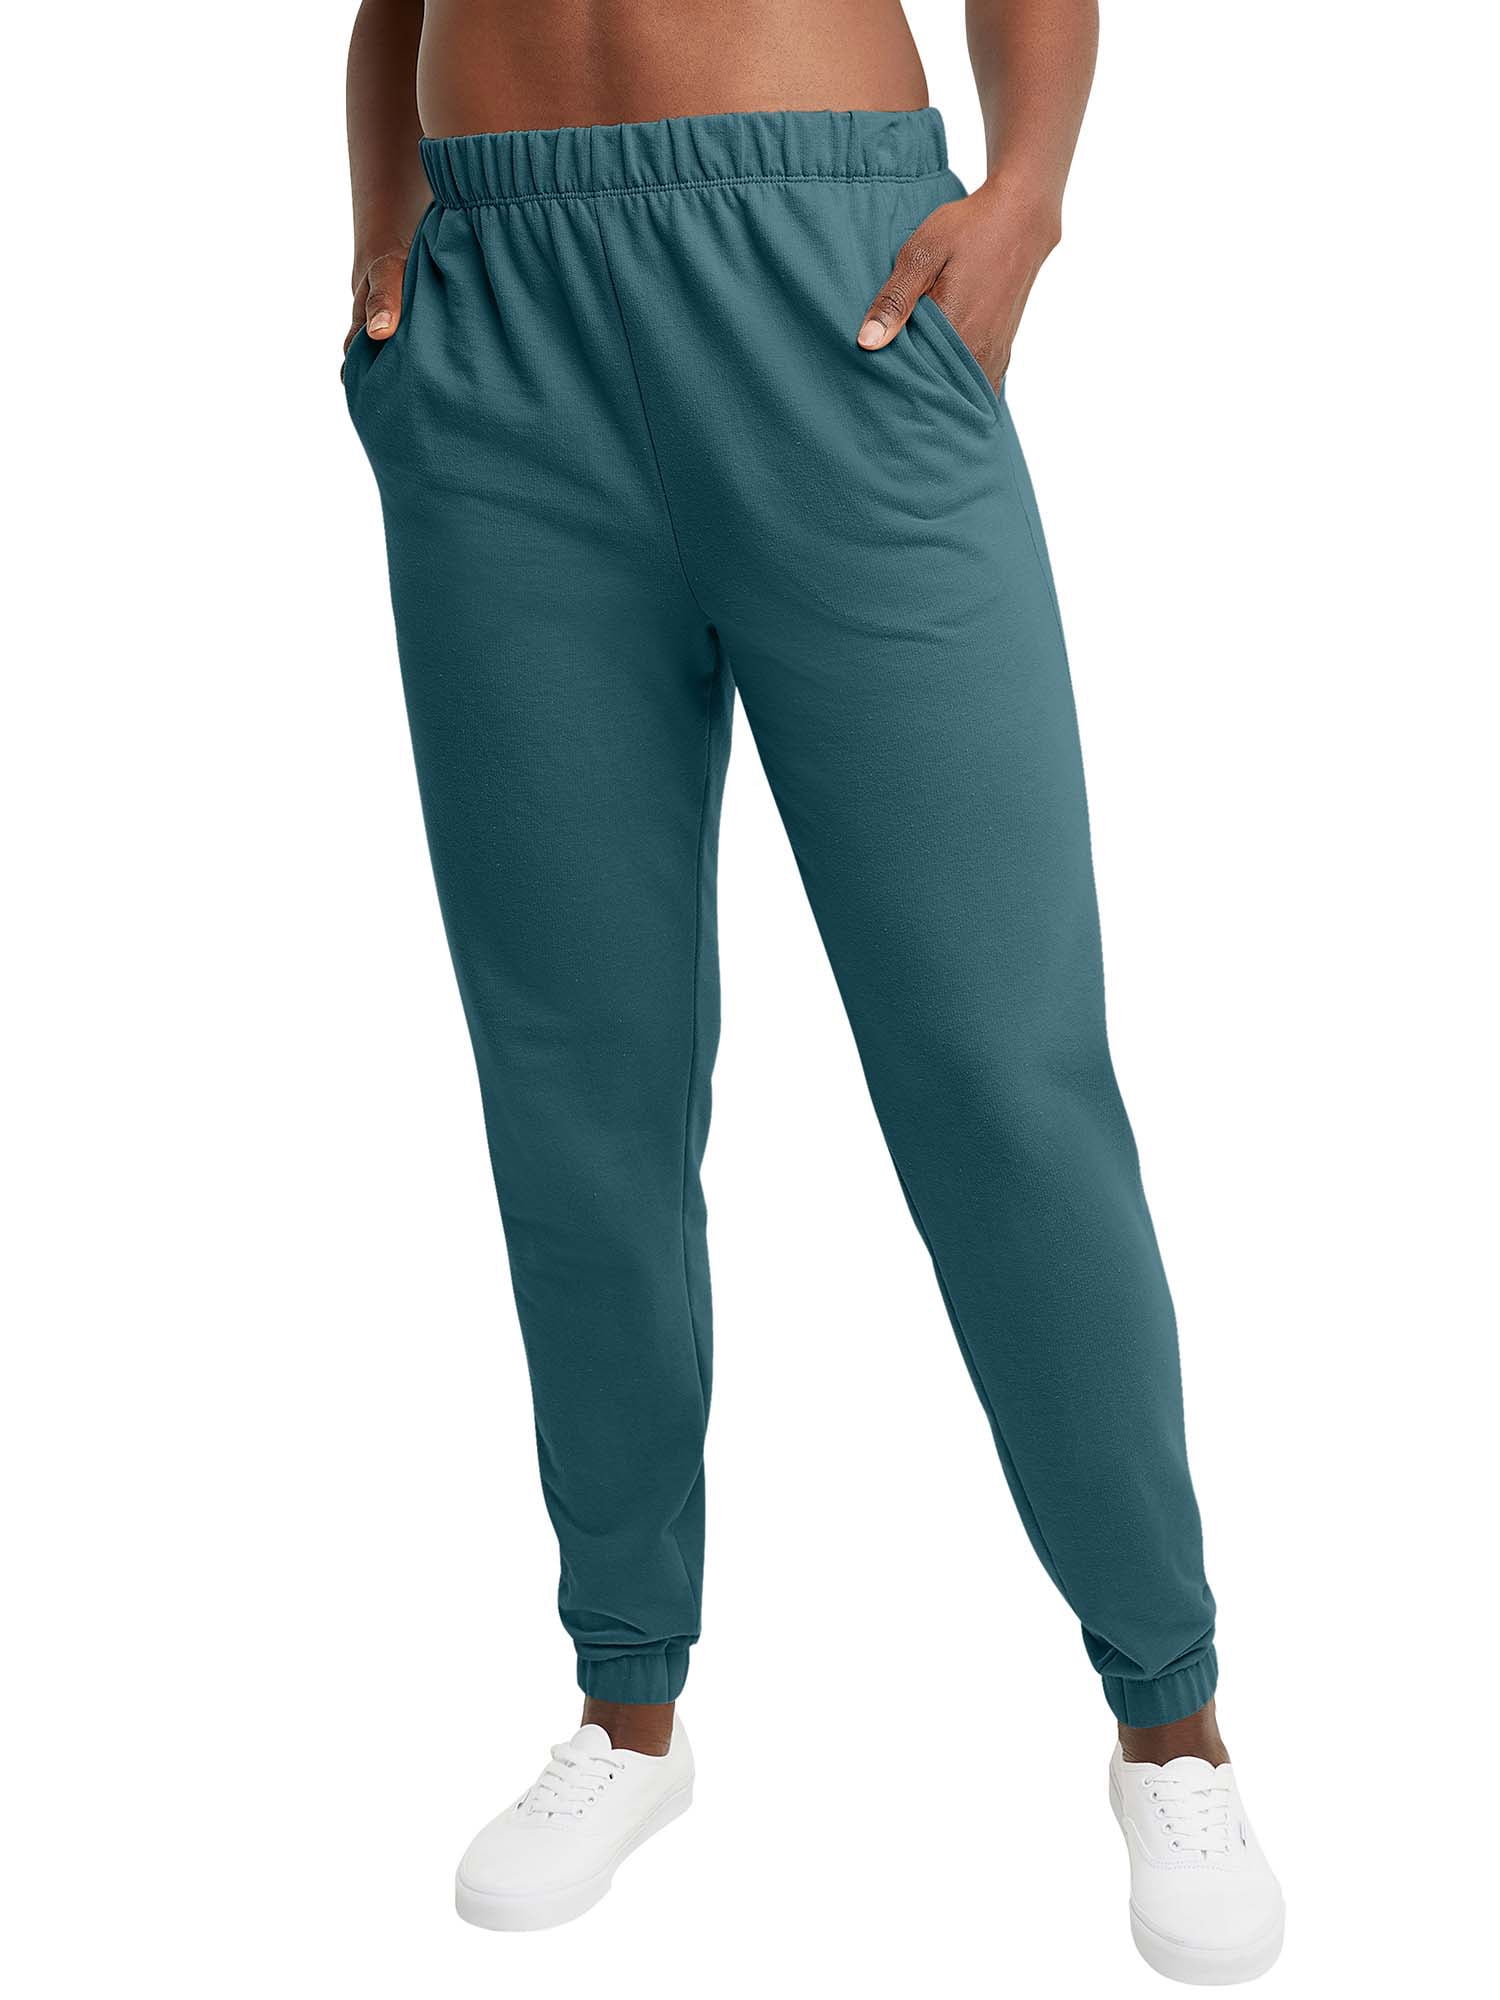 Hanes Originals Women's Jogger Sweatpants With Pockets 